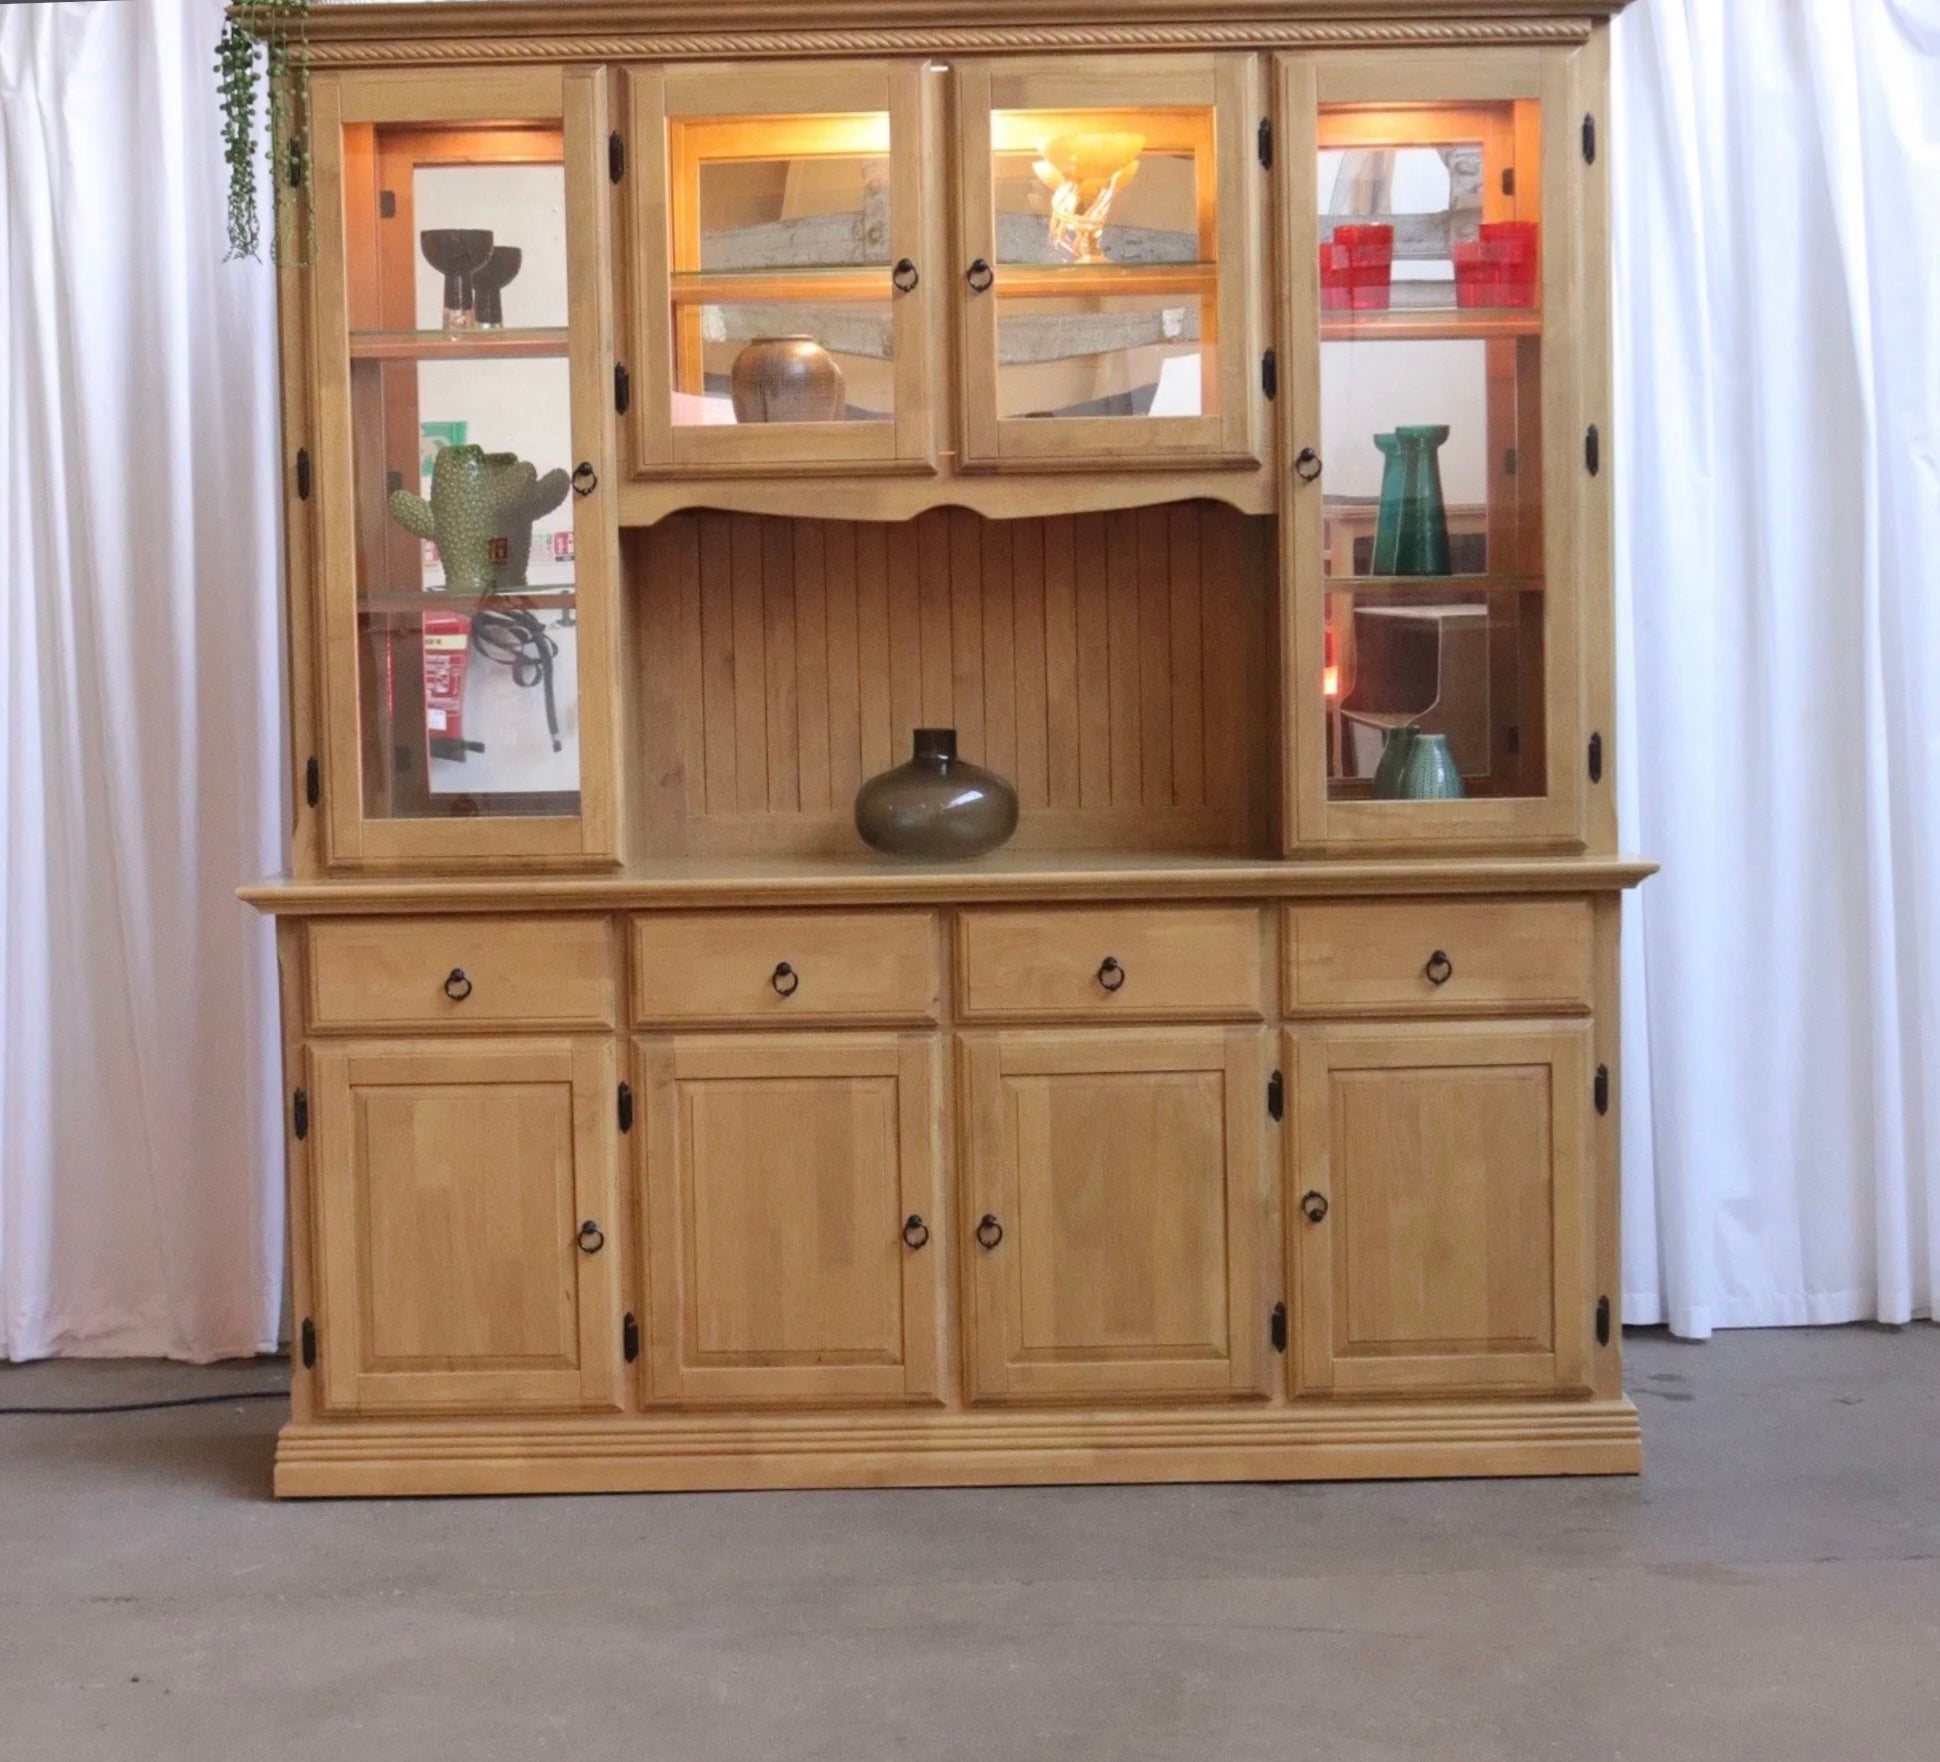 Oak Large Dresser Original Rustic Solid Wood Sideboard Storage Display - teakyfinders